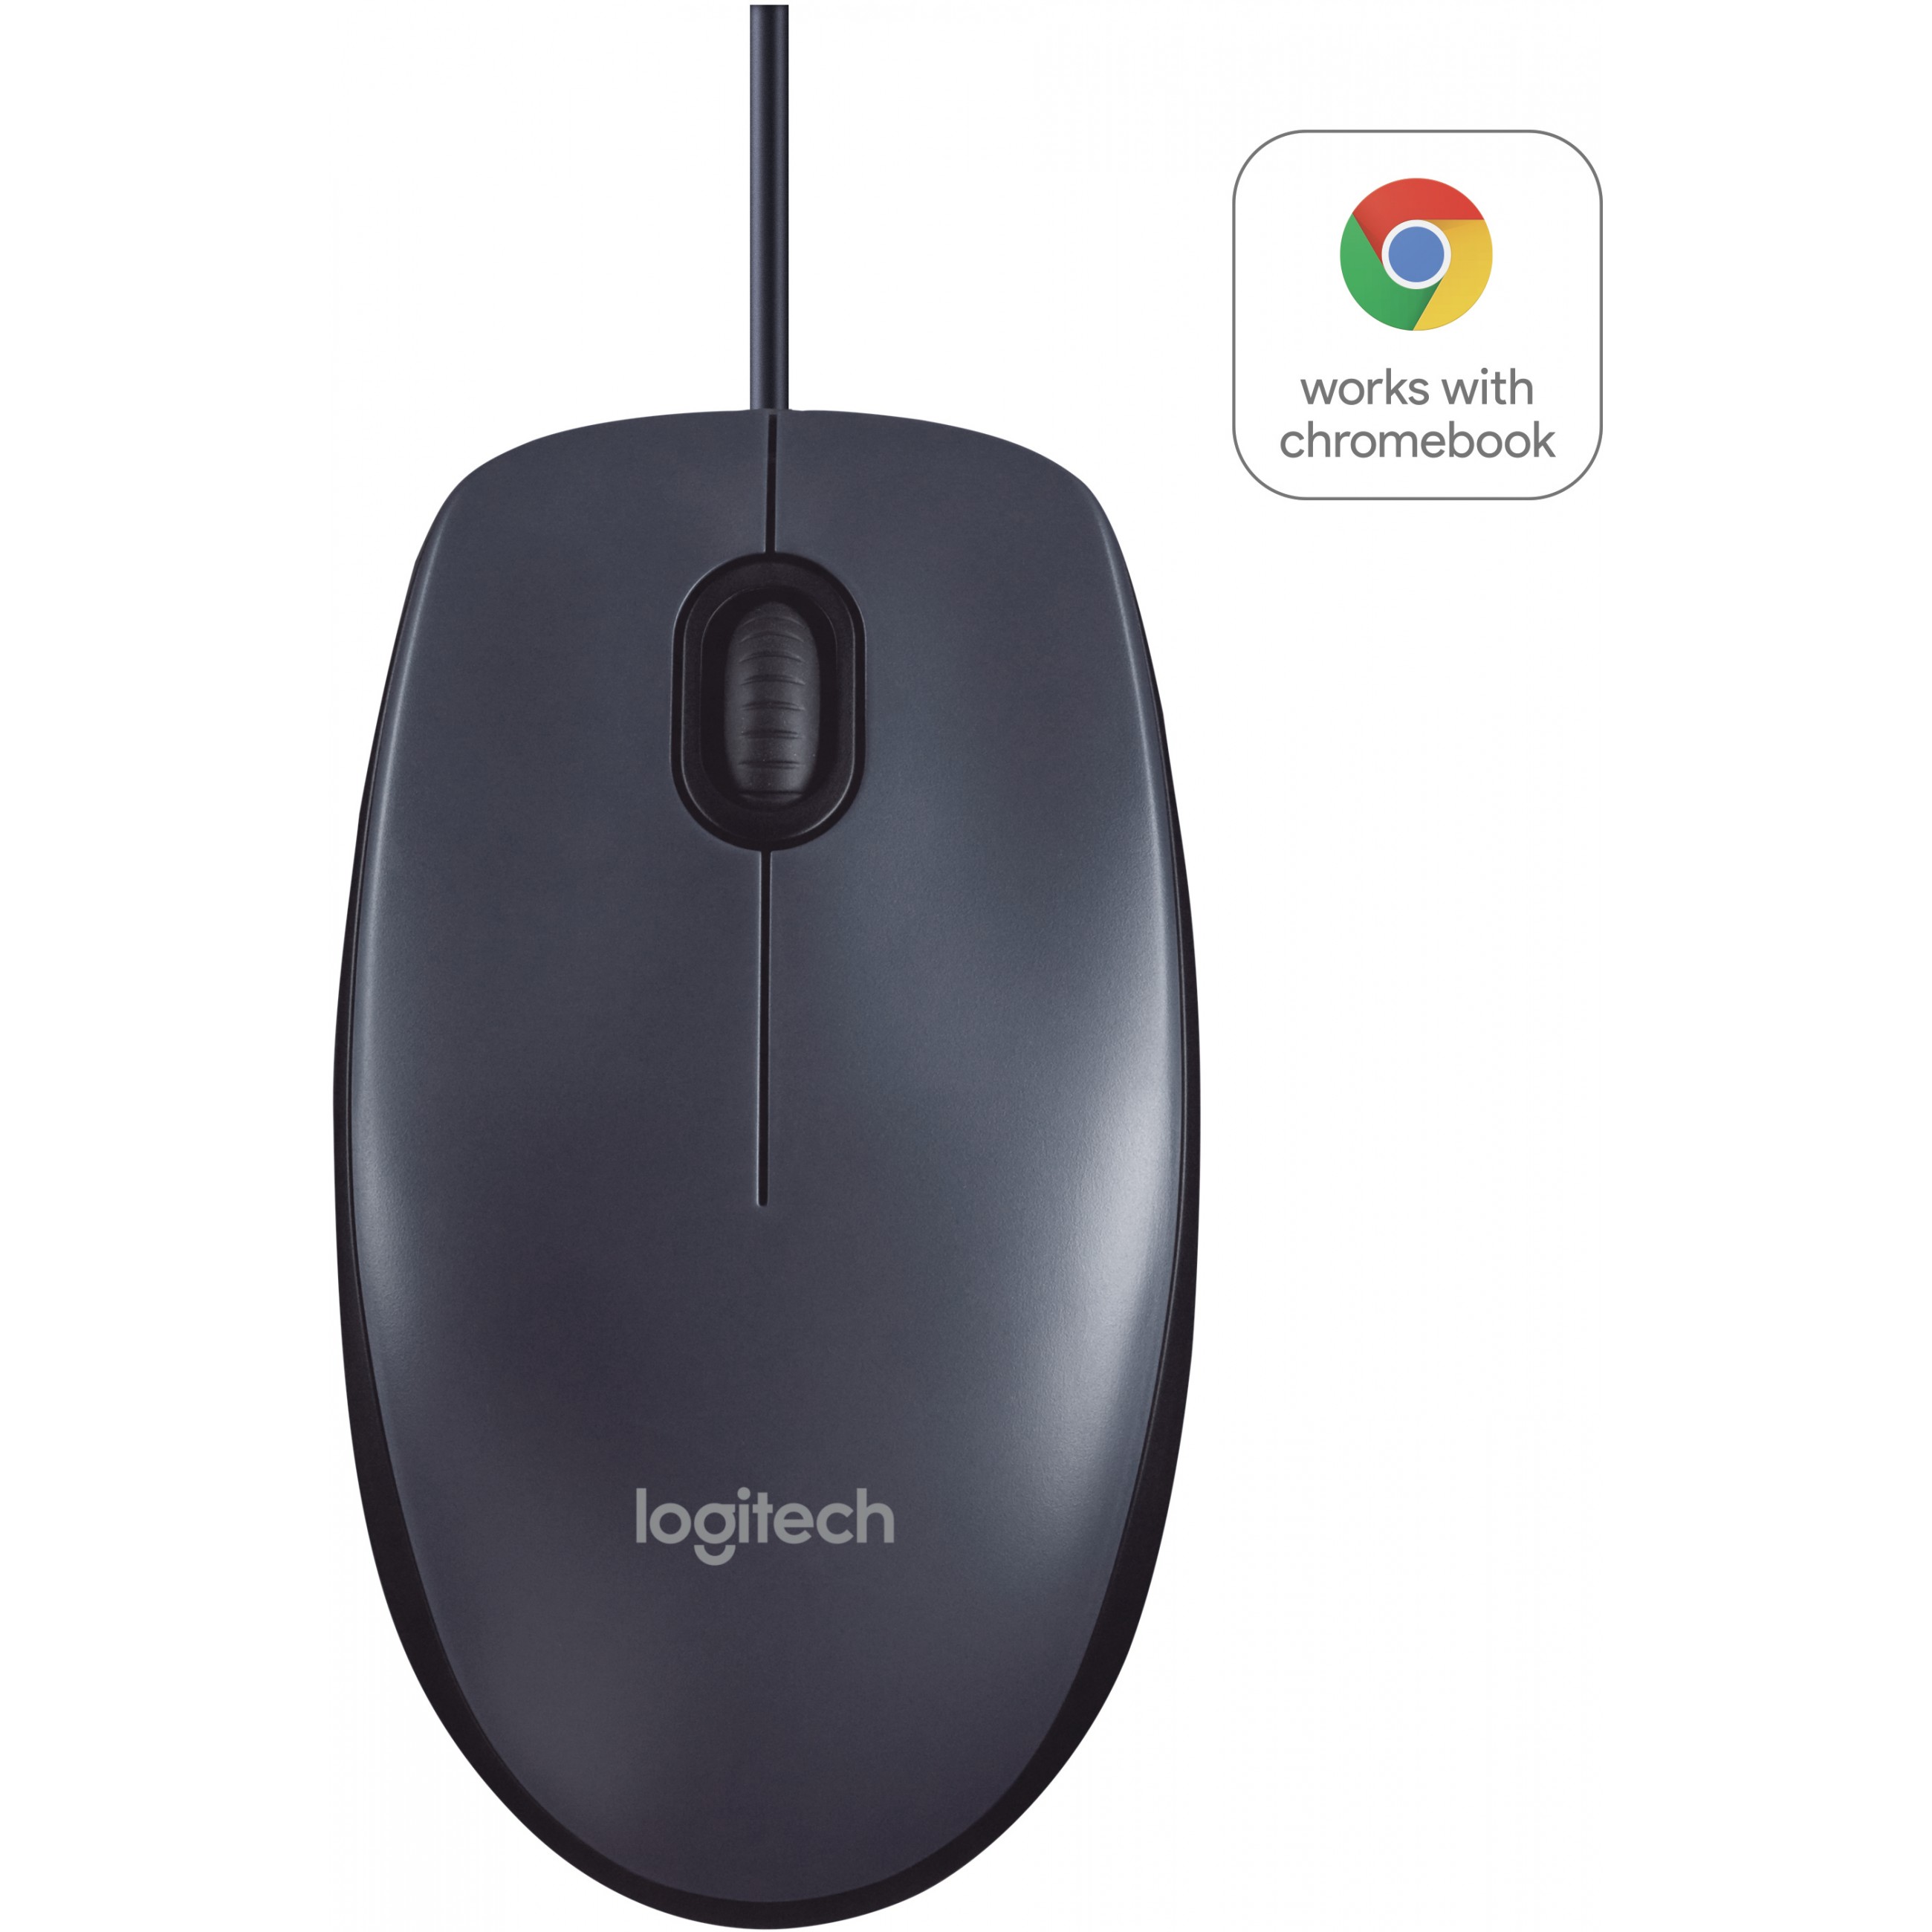 Logitech B100 mouse